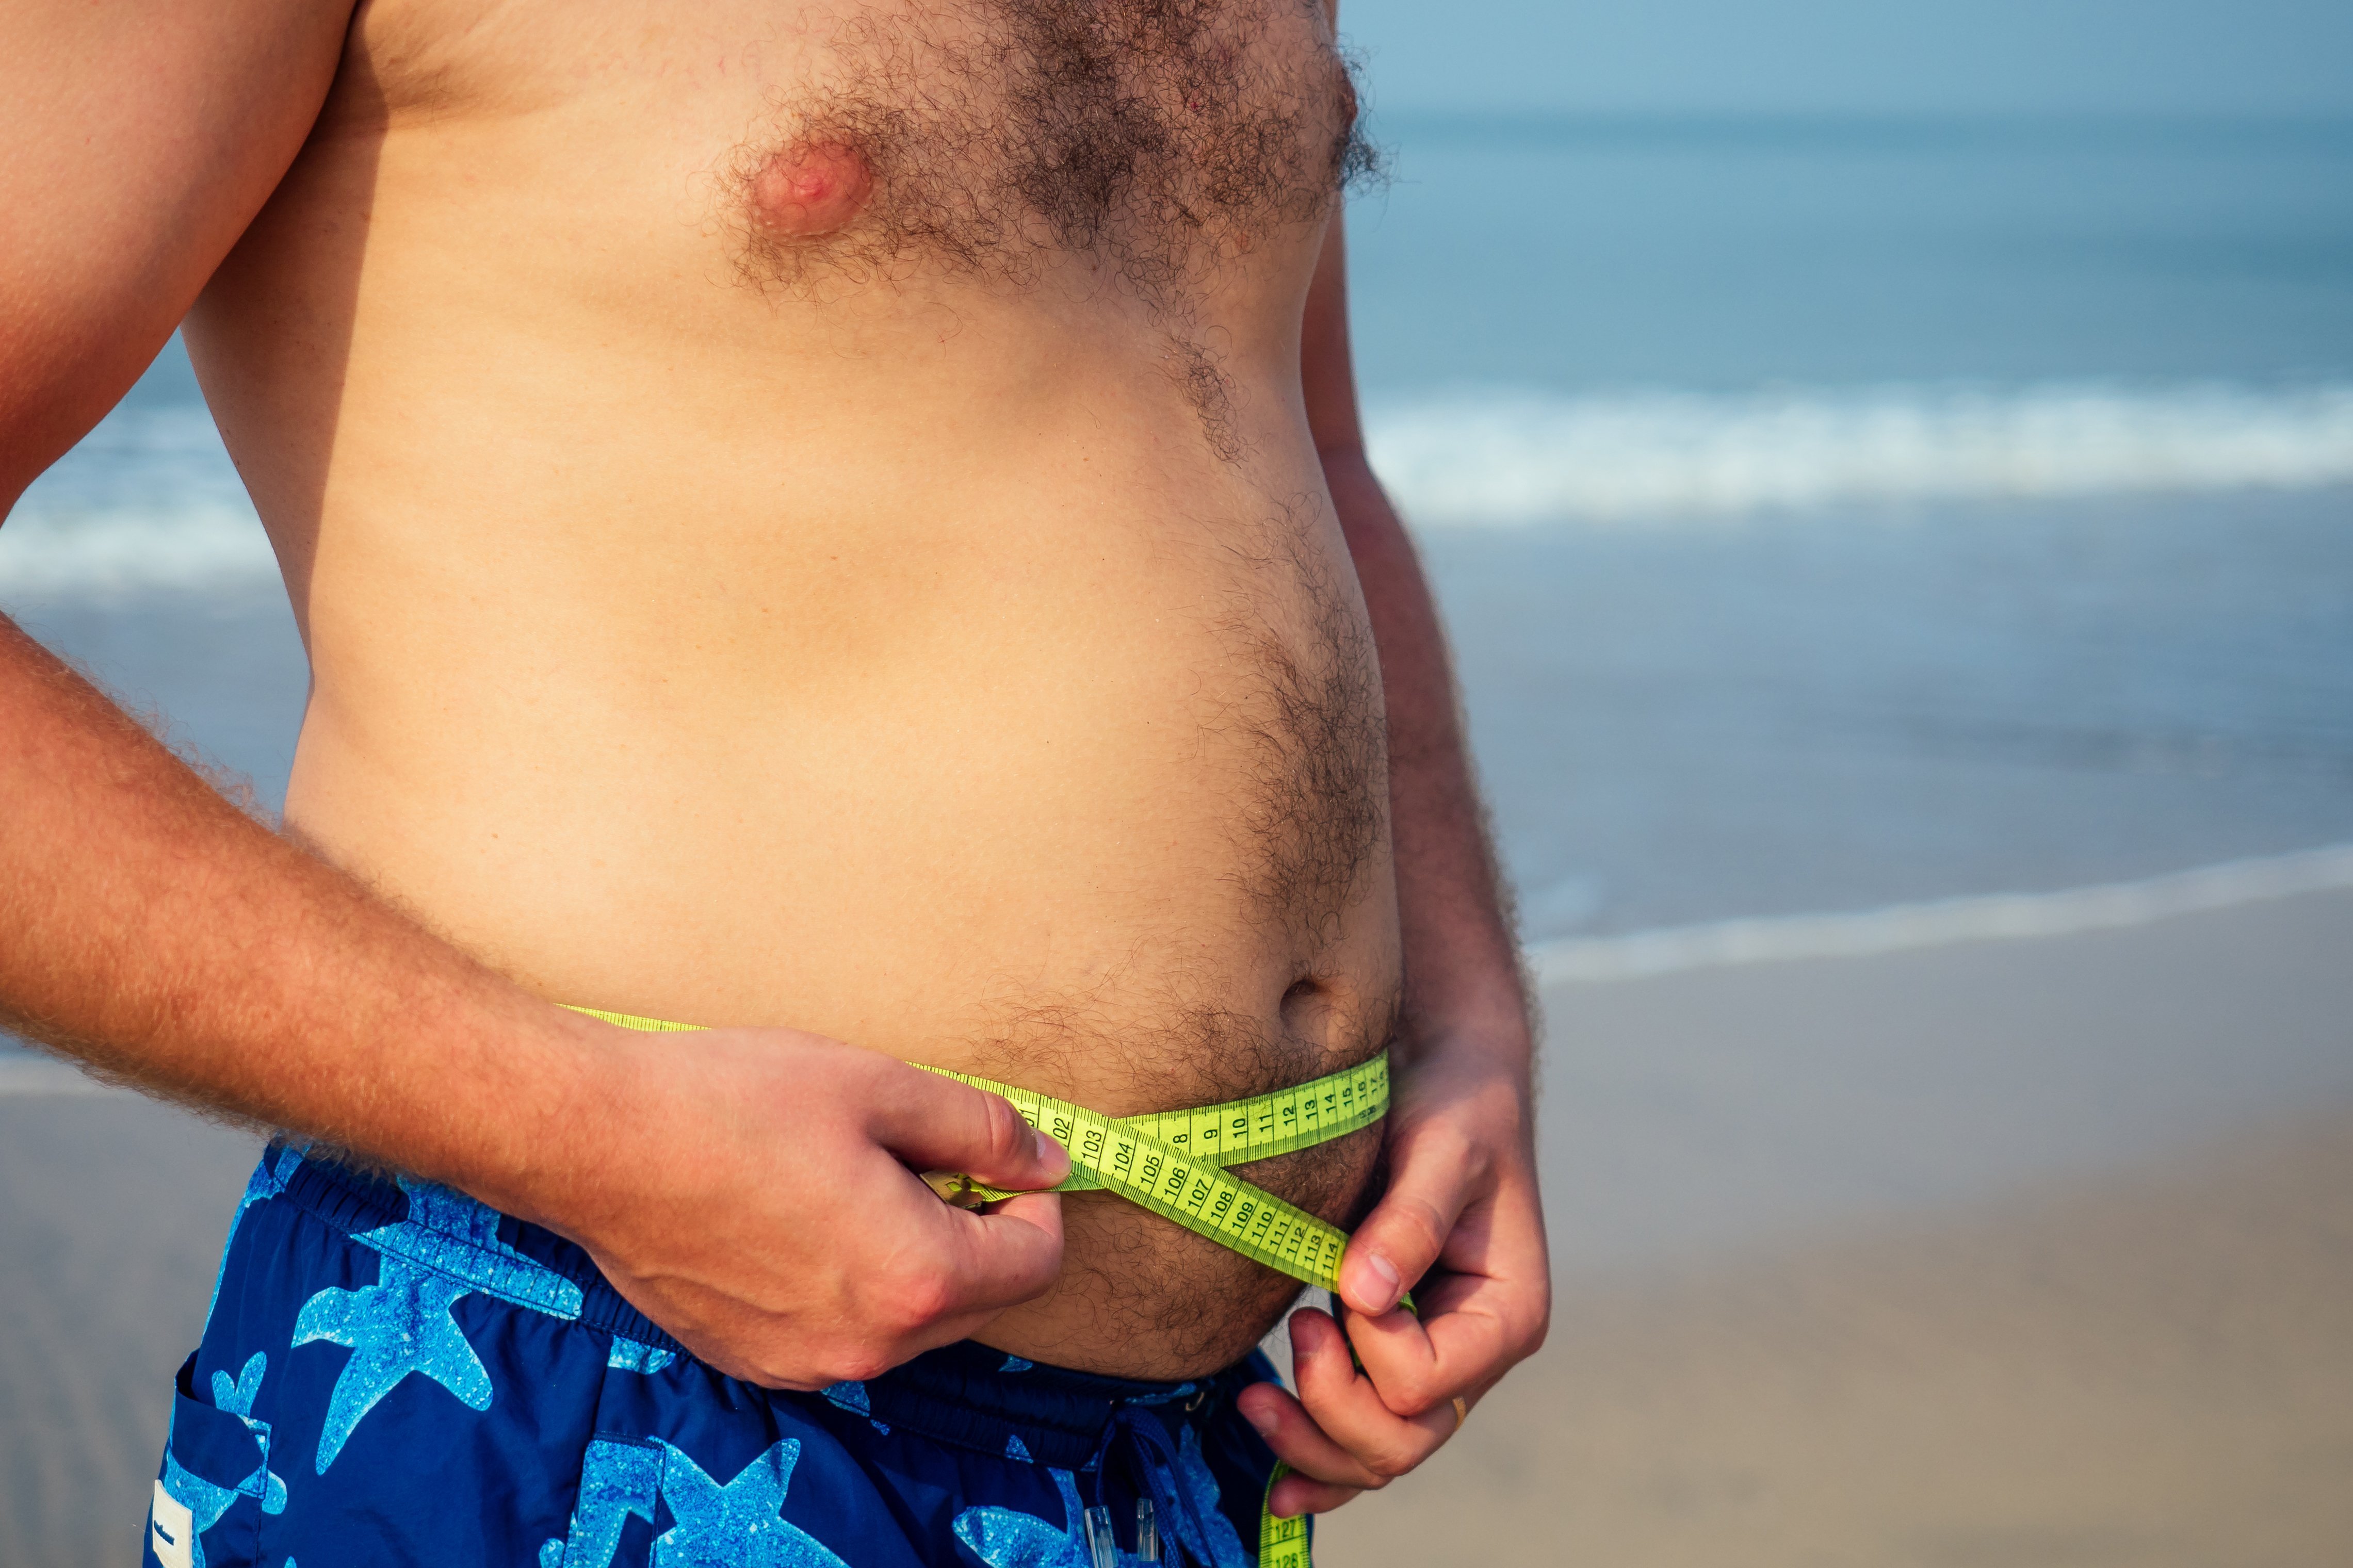 Mann in Badehose misst seinen Bauchumfang am Strand mit einem Schneidermassband